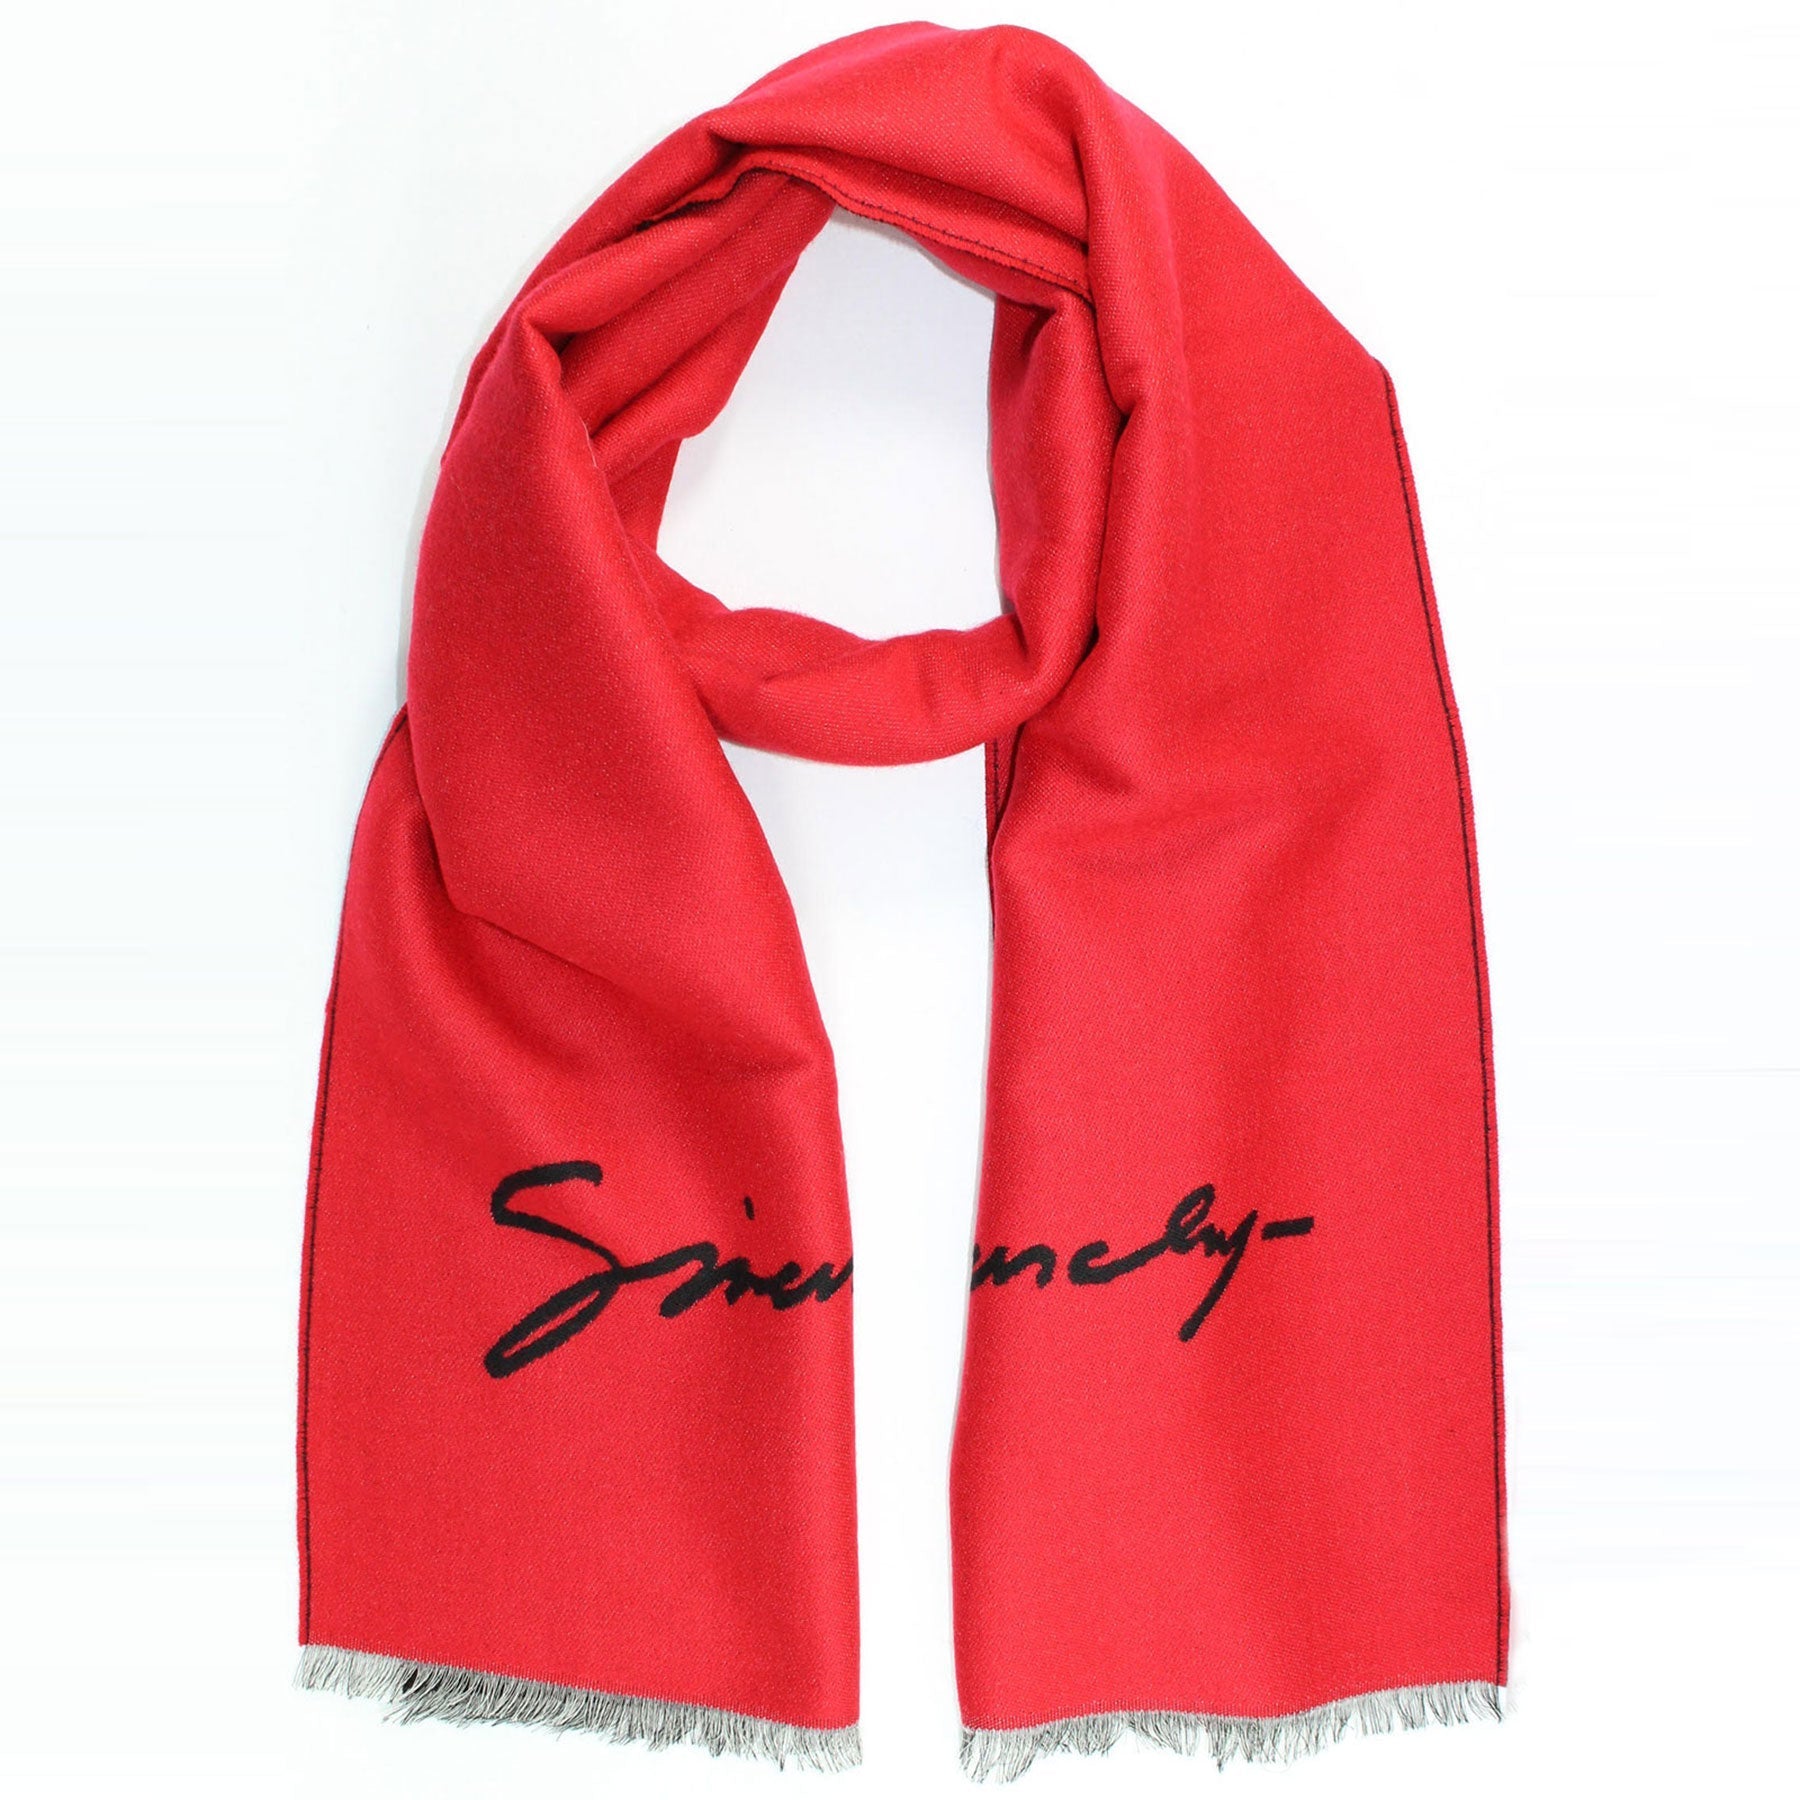 Givenchy Scarf Red Black Logo Design - Wool Silk Shawl